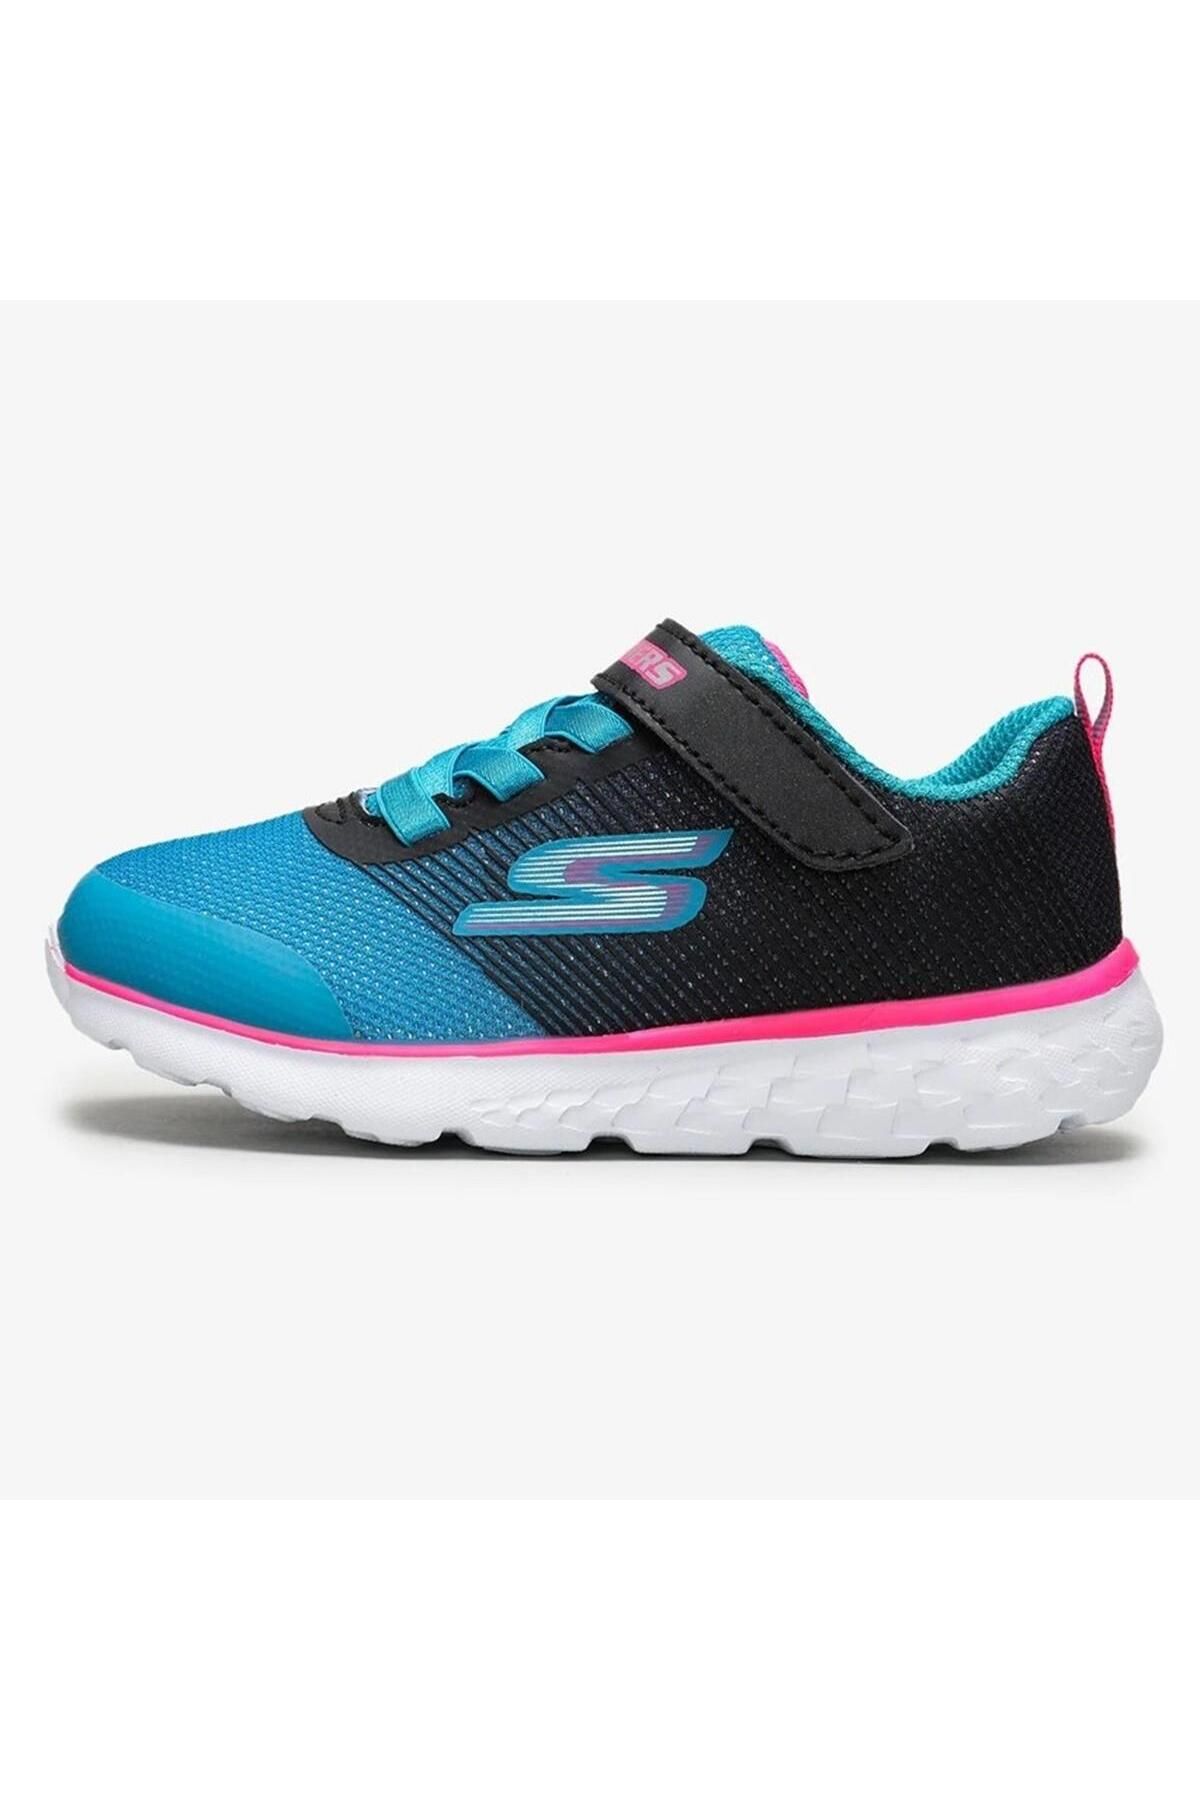 Skechers Gorun 400 Sparkle Zooms Kız Çocuk Ayakkabısı Mavi